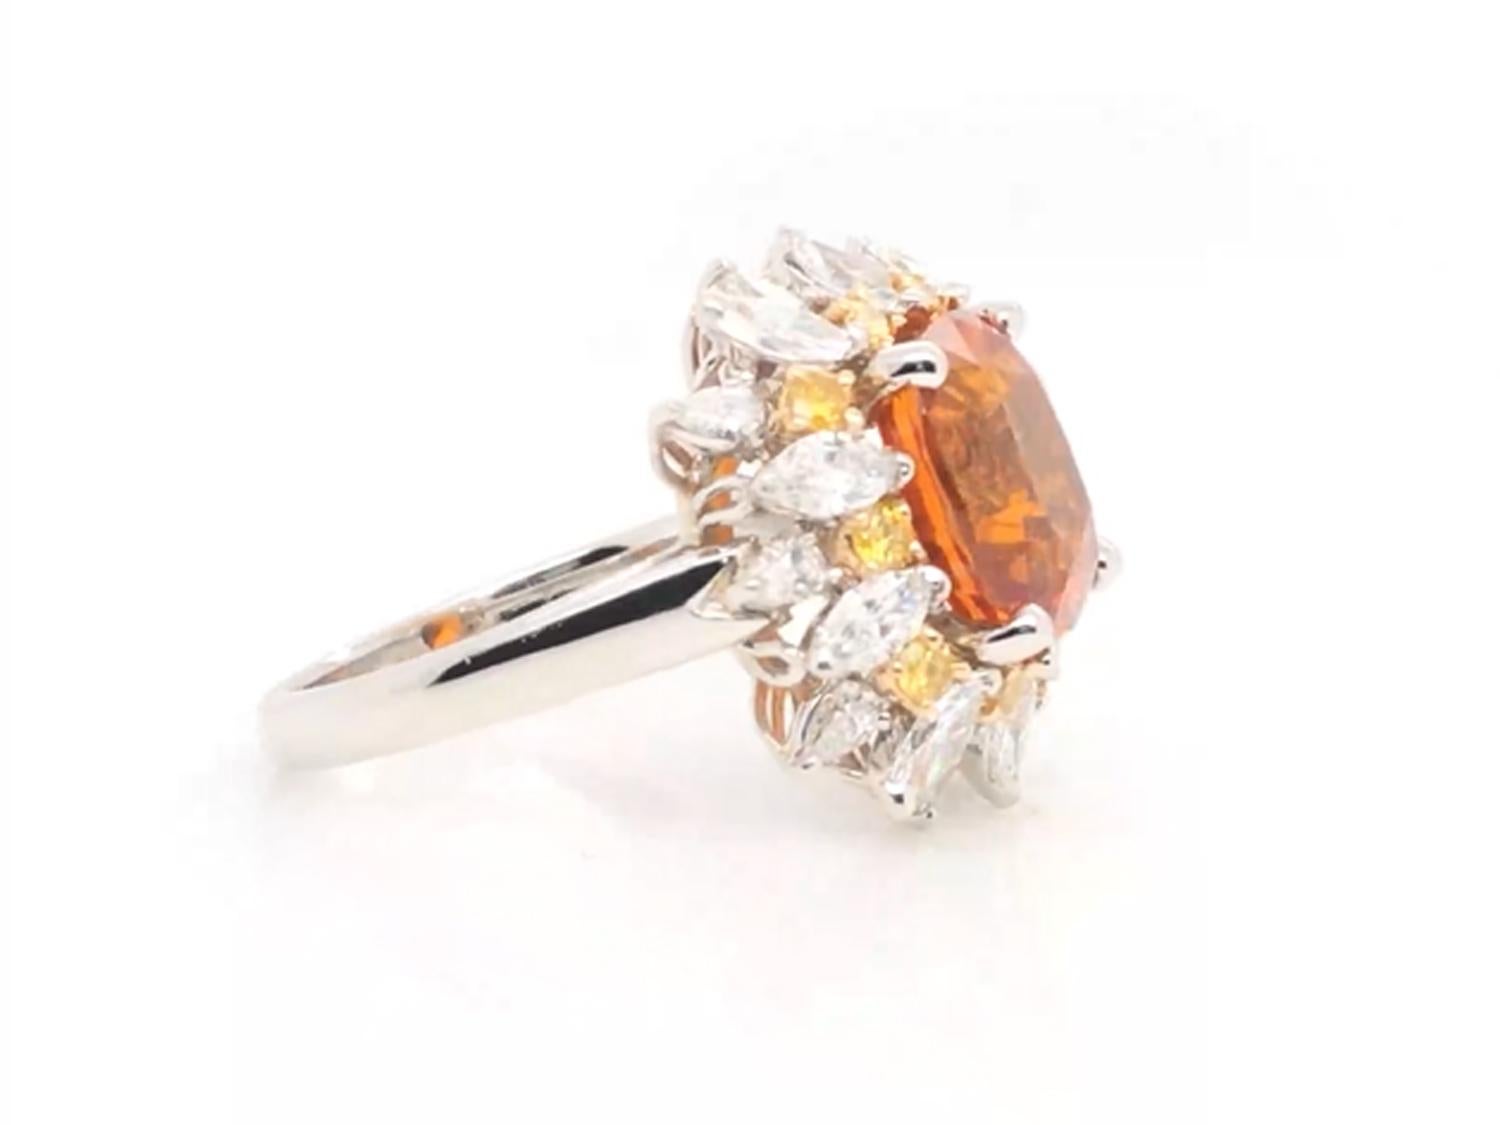 Contemporary Oscar Heyman GIA Certified 6.04ct Orange Sapphire, Diamond & Yellow Diamond Ring